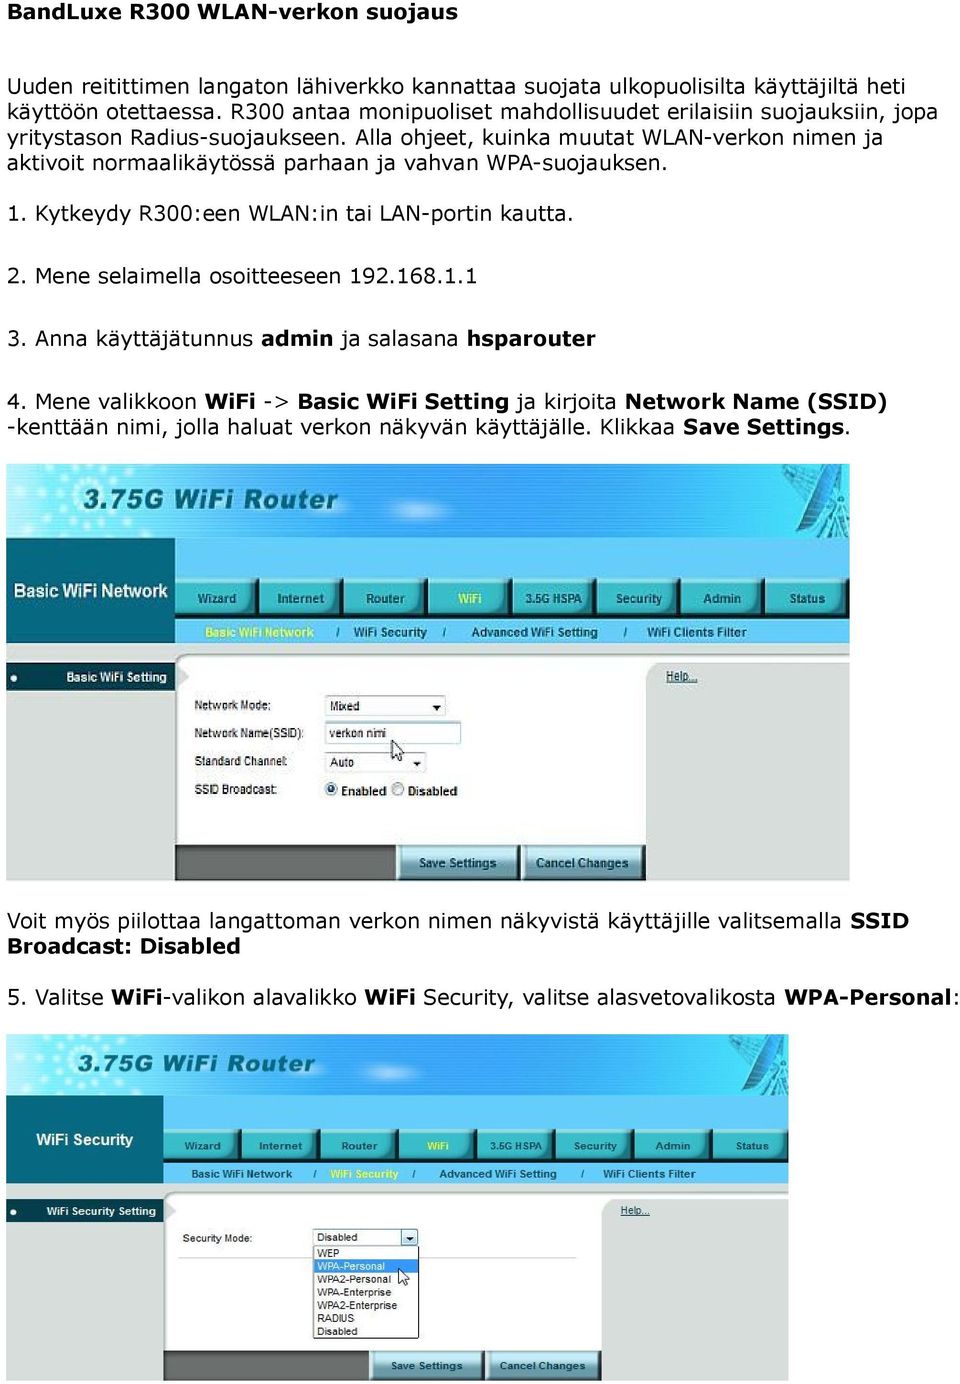 Alla ohjeet, kuinka muutat WLAN-verkon nimen ja aktivoit normaalikäytössä parhaan ja vahvan WPA-suojauksen. 1. Kytkeydy R300:een WLAN:in tai LAN-portin kautta. 2. Mene selaimella osoitteeseen 192.168.